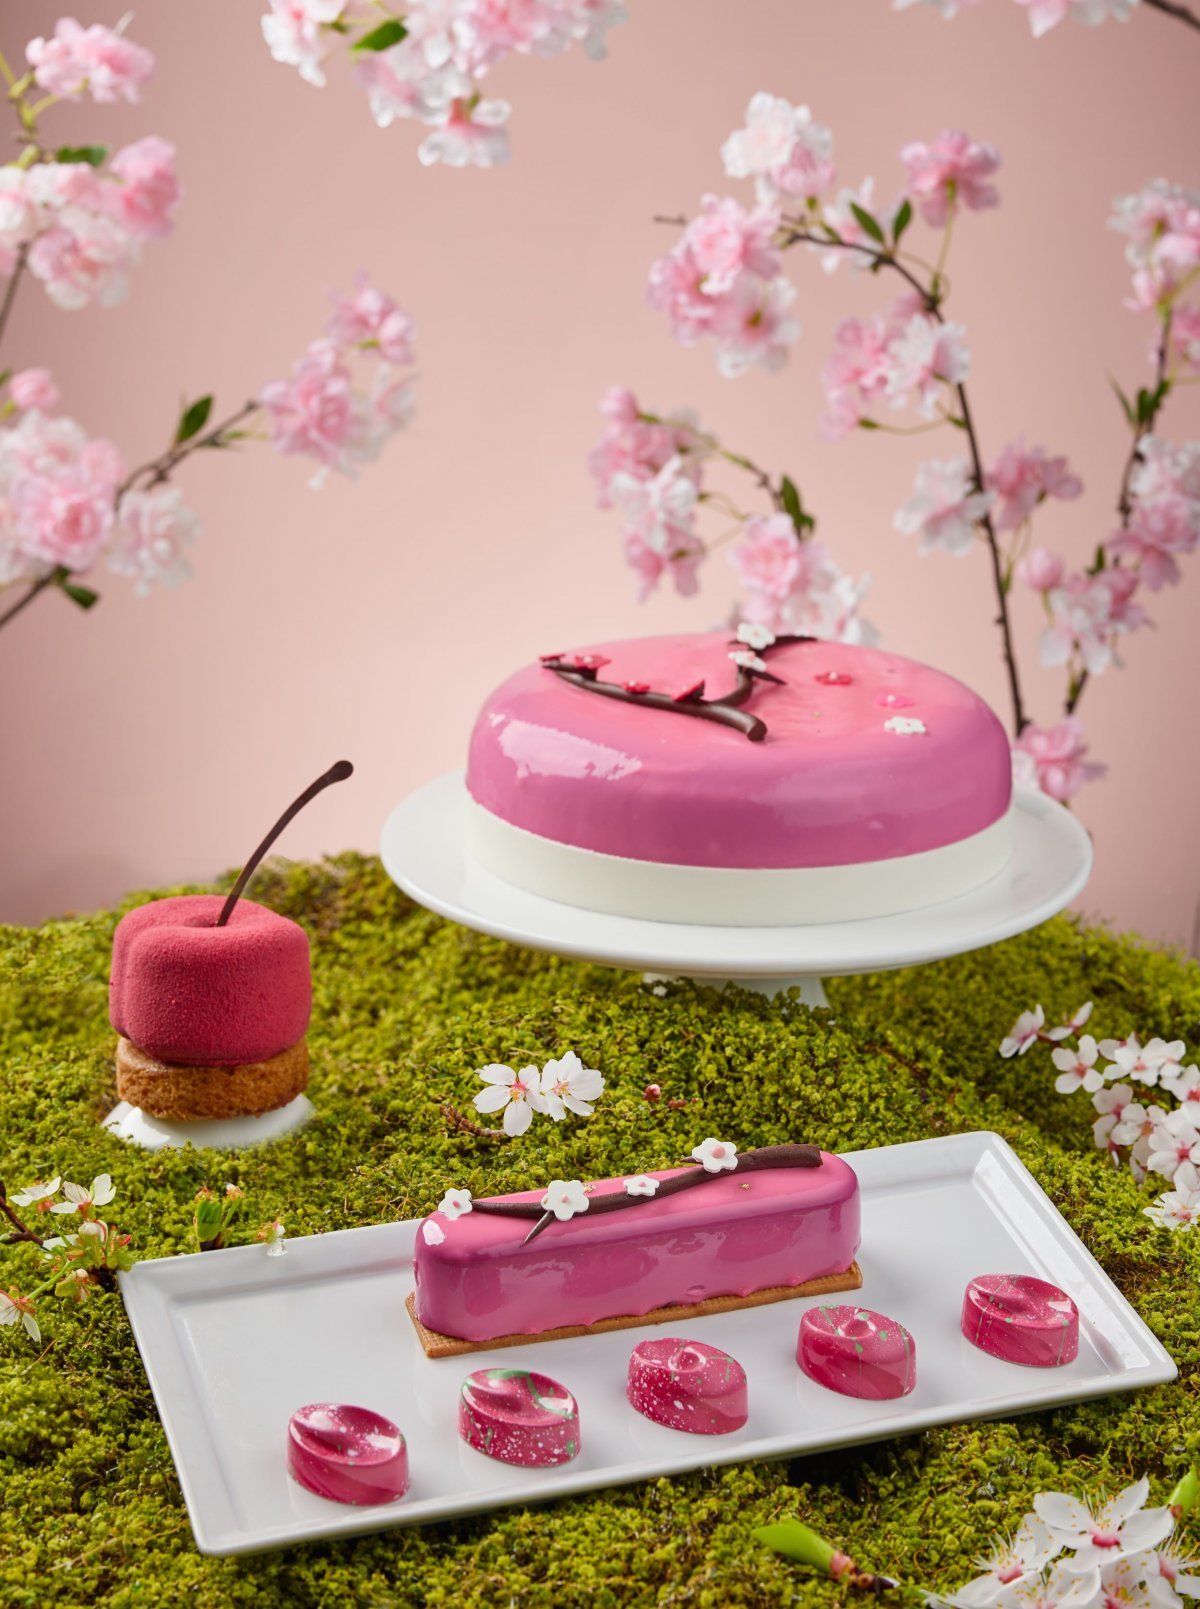 그랜드 하얏트 제주 미쉐린 스타셰프의 벚꽃 테마 디저트 체리 블라섬 케이크.